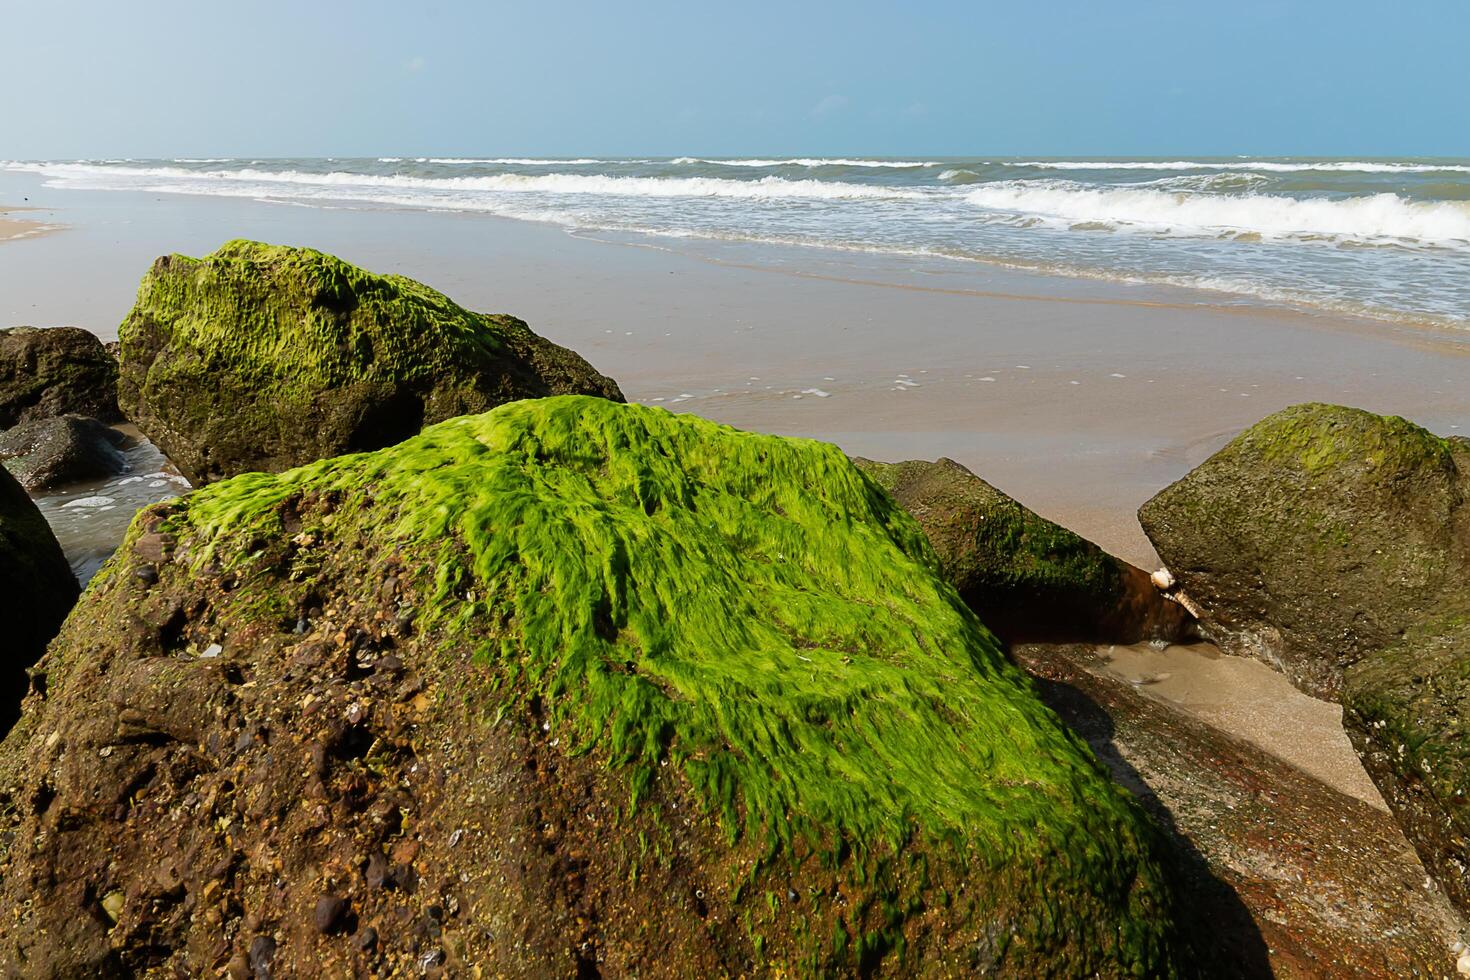 Grün Algen auf Felsen foto